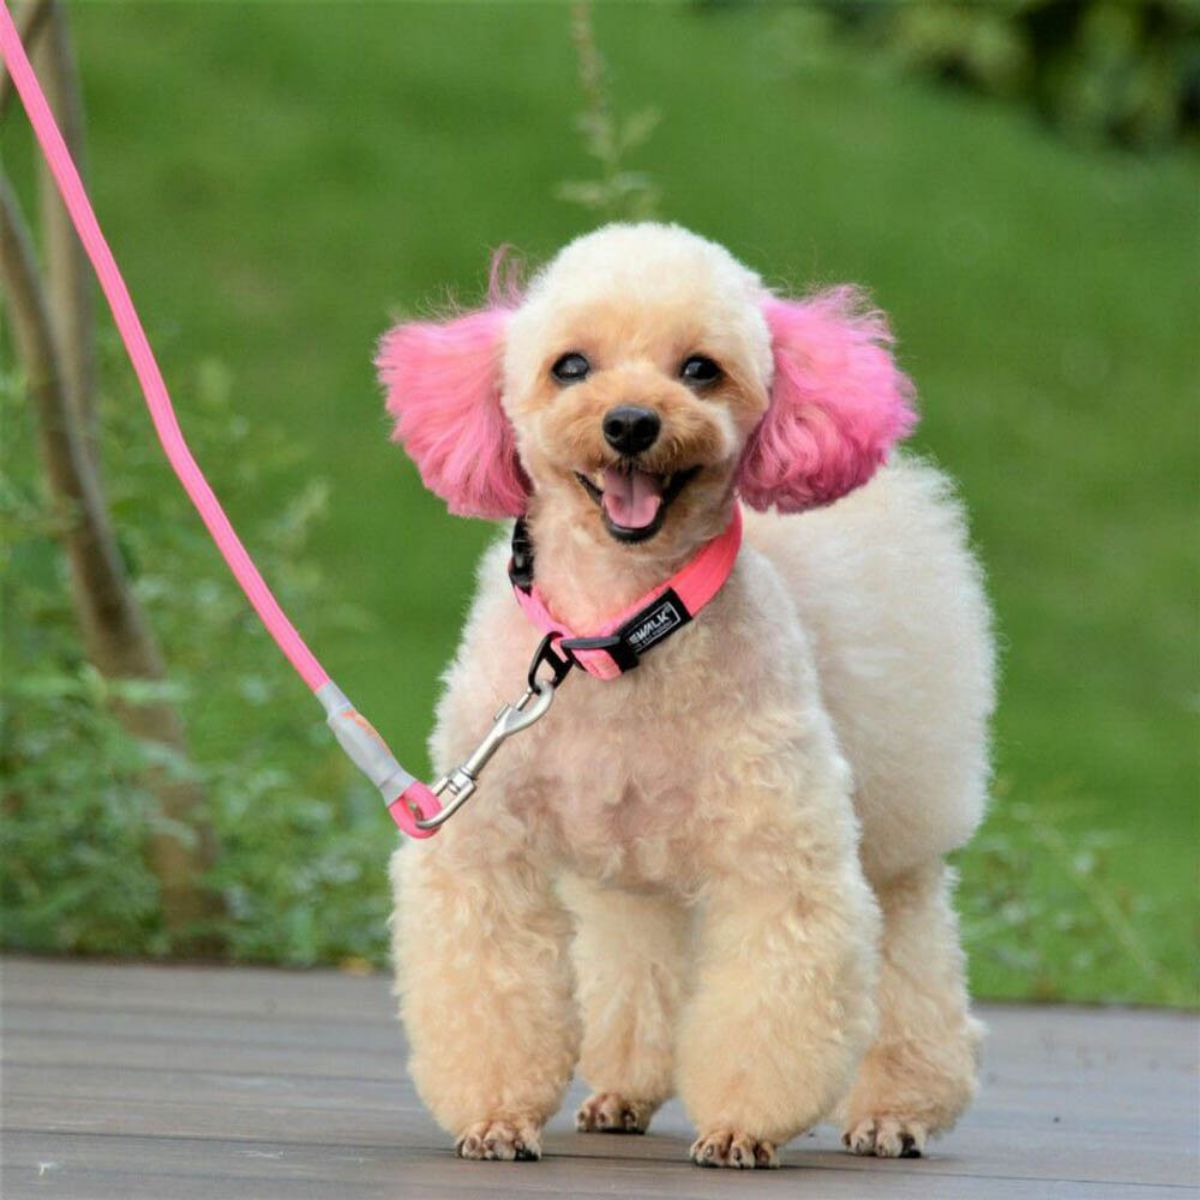 カラーズ オブ ネイチャーシリーズの首輪とリードを着用した犬の写真